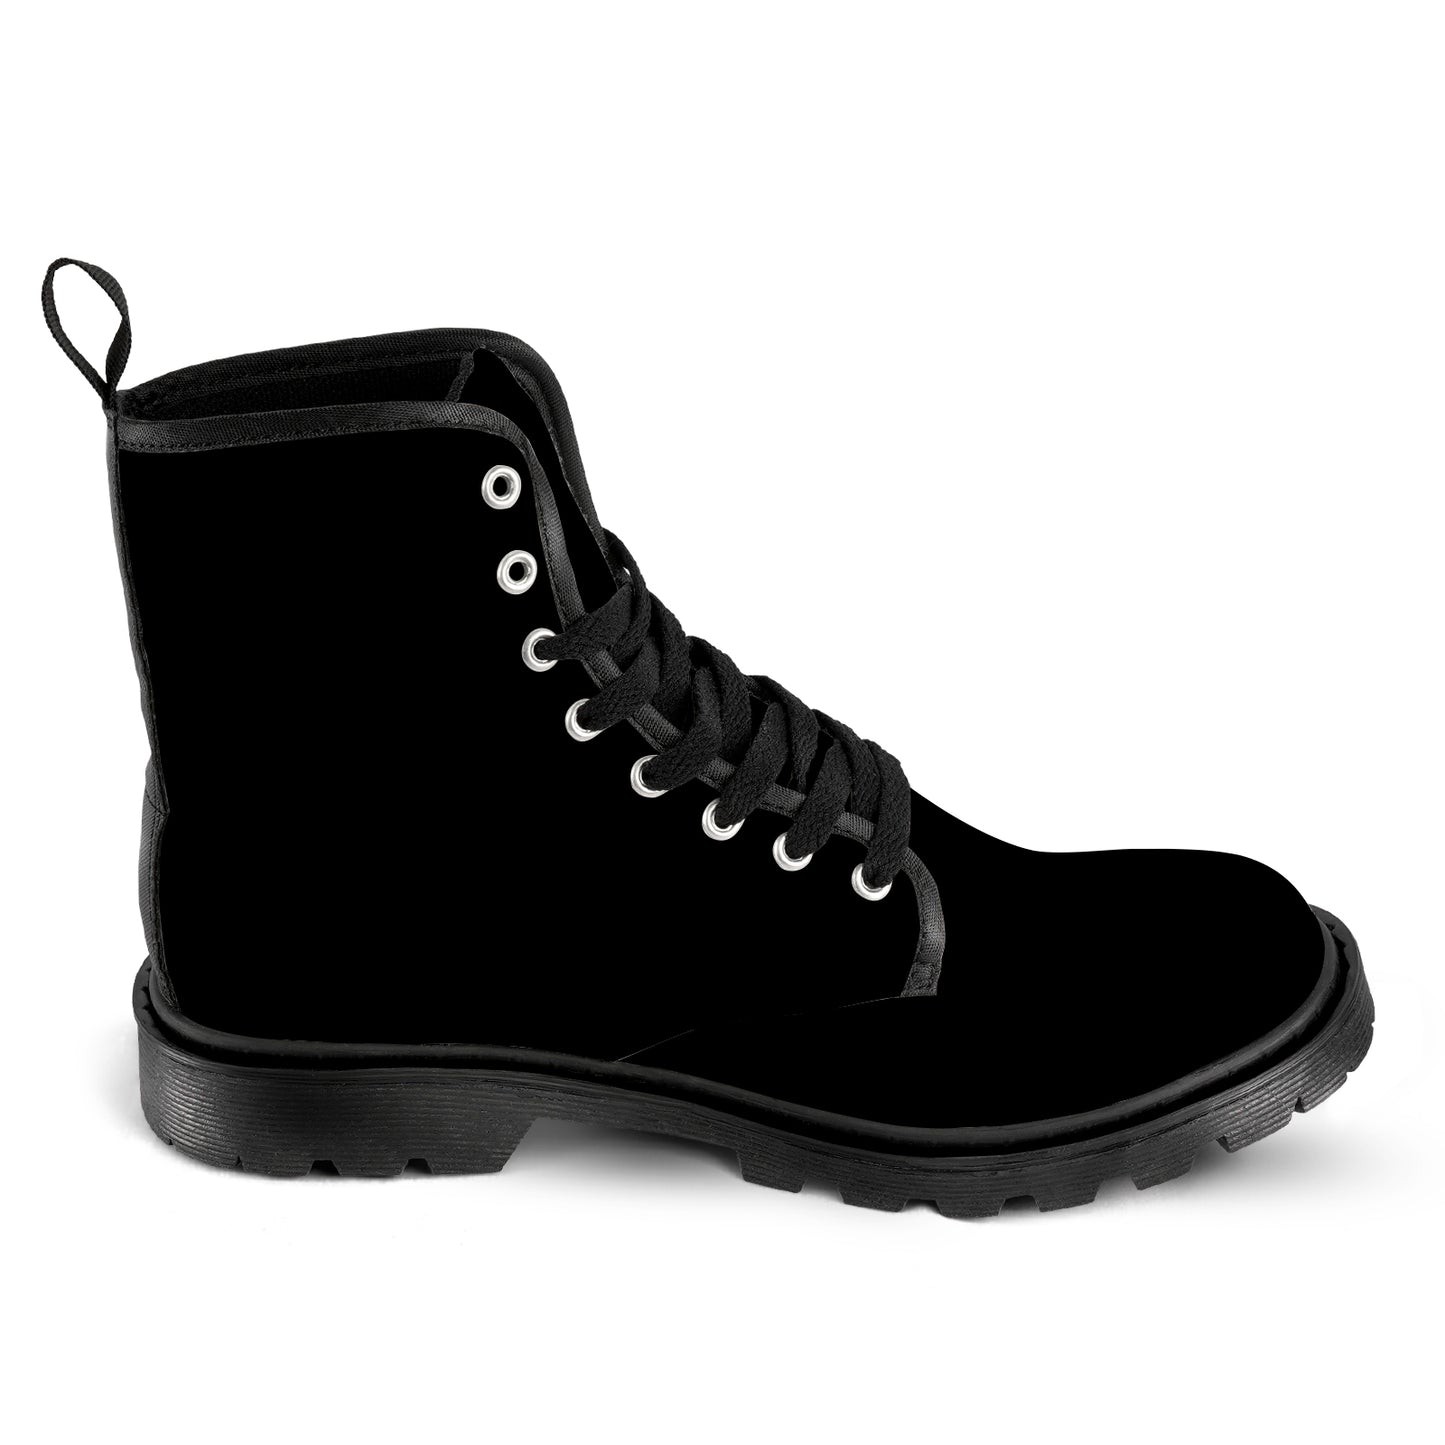 Men's Lace Up Canvas Boots - Classic Black